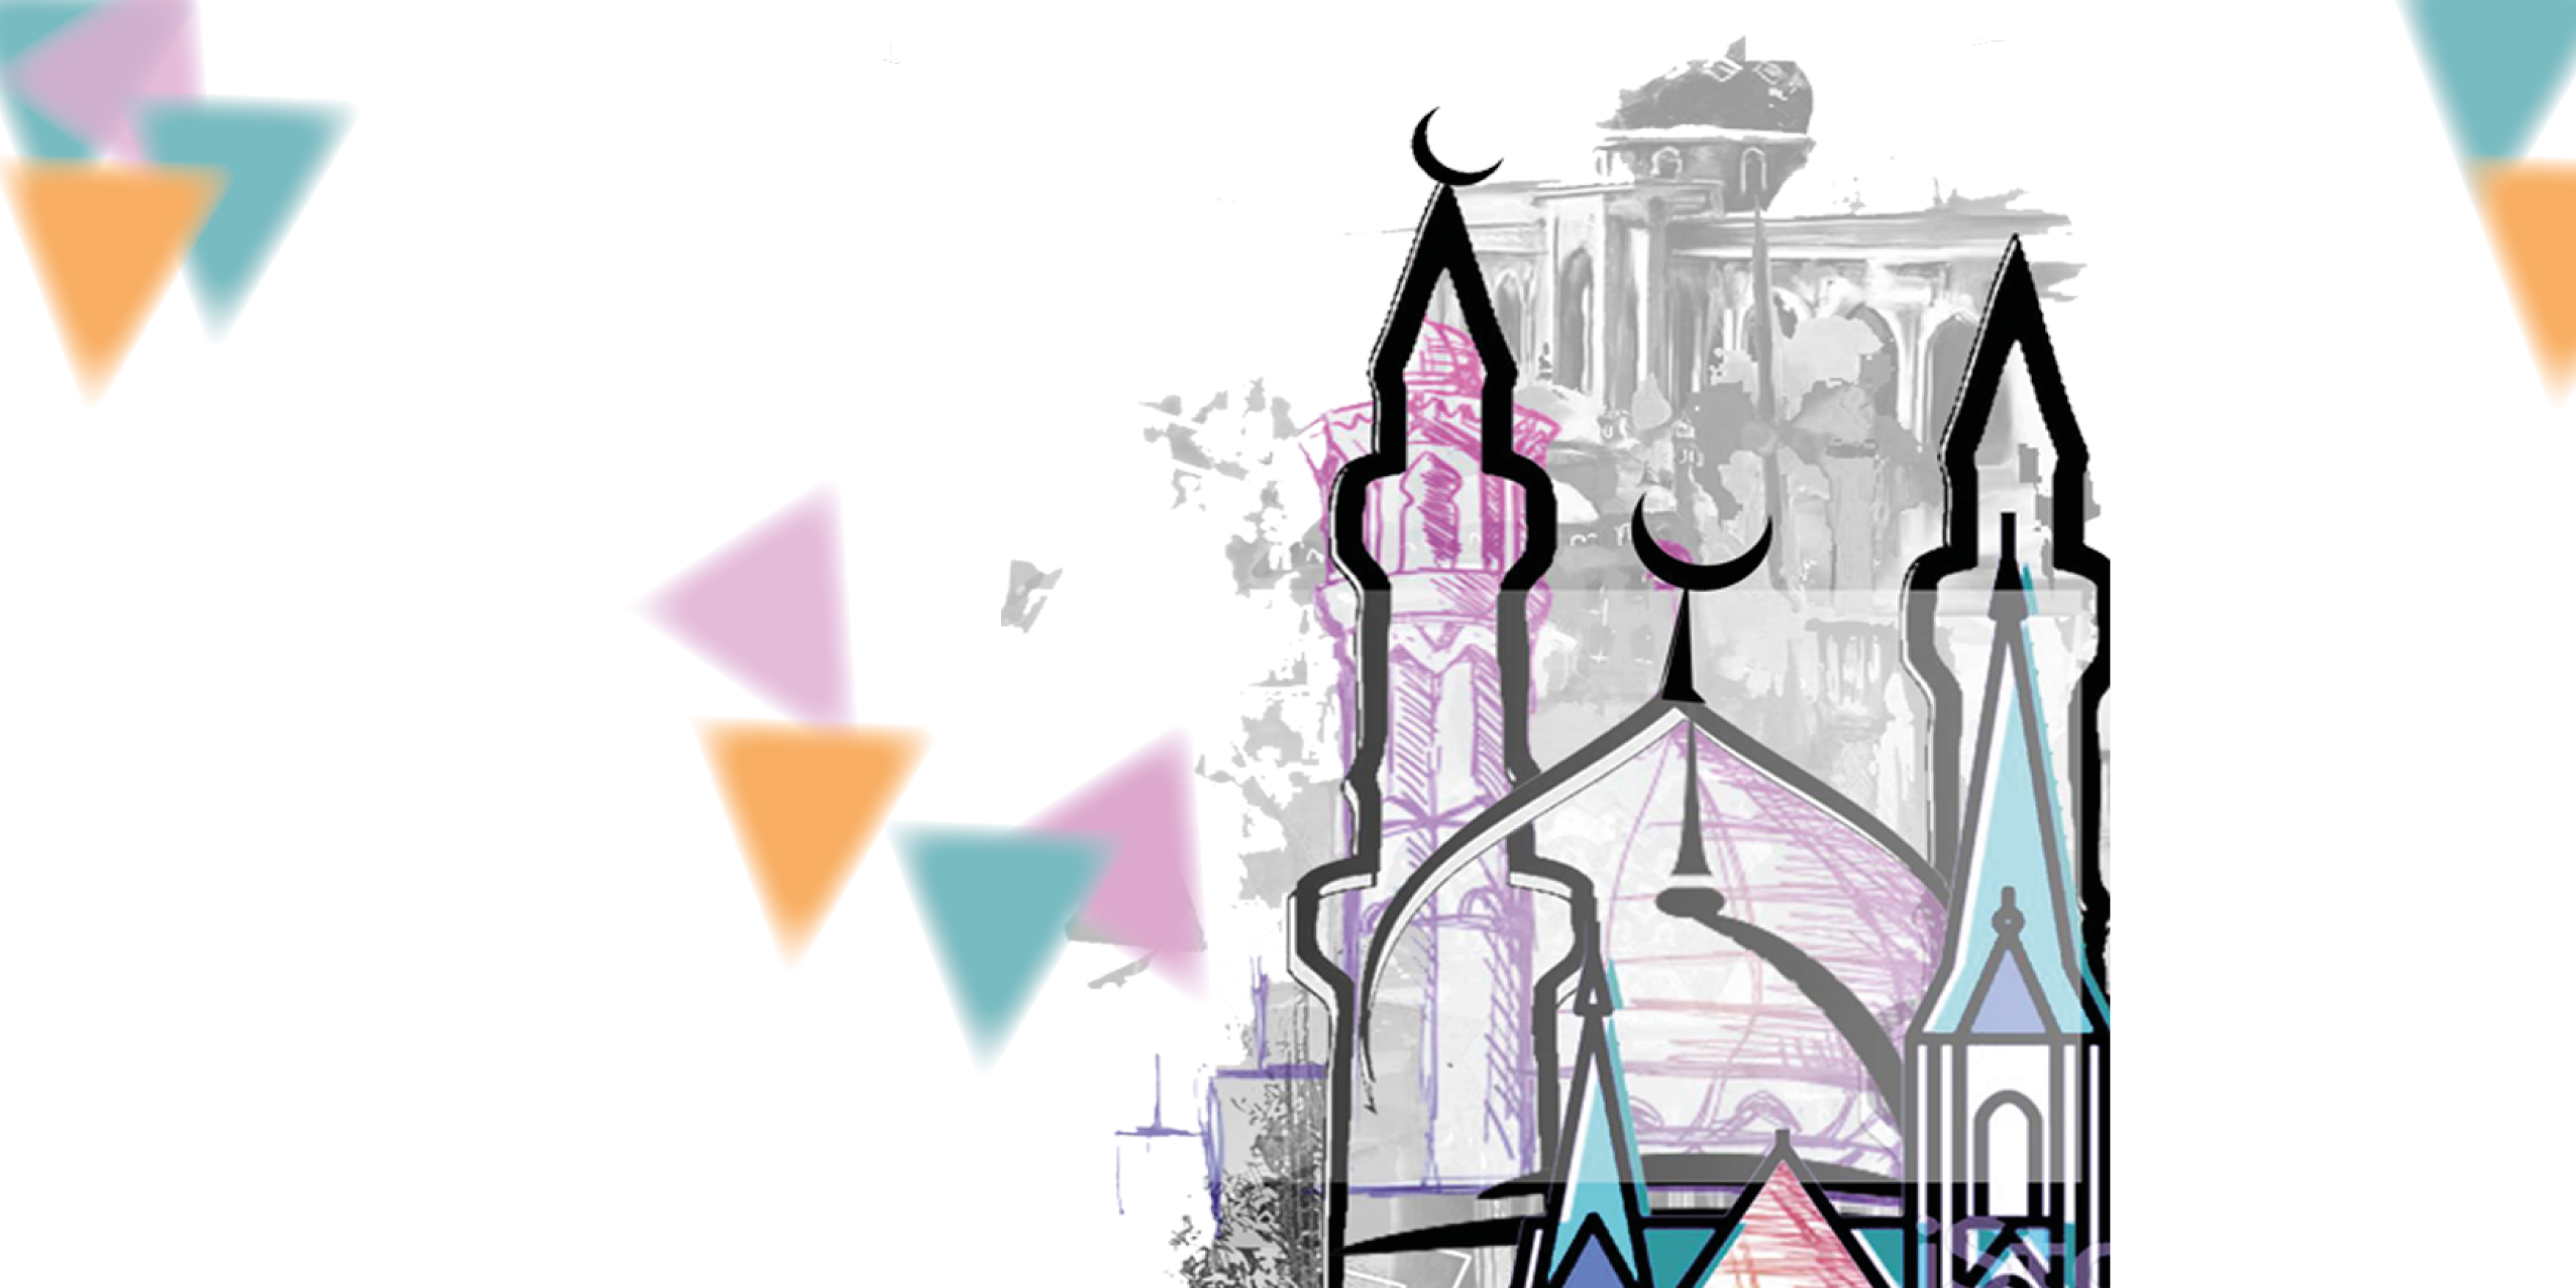 Silhouette einer Moschee mit bunten Dreiecken und Punkten darum herum